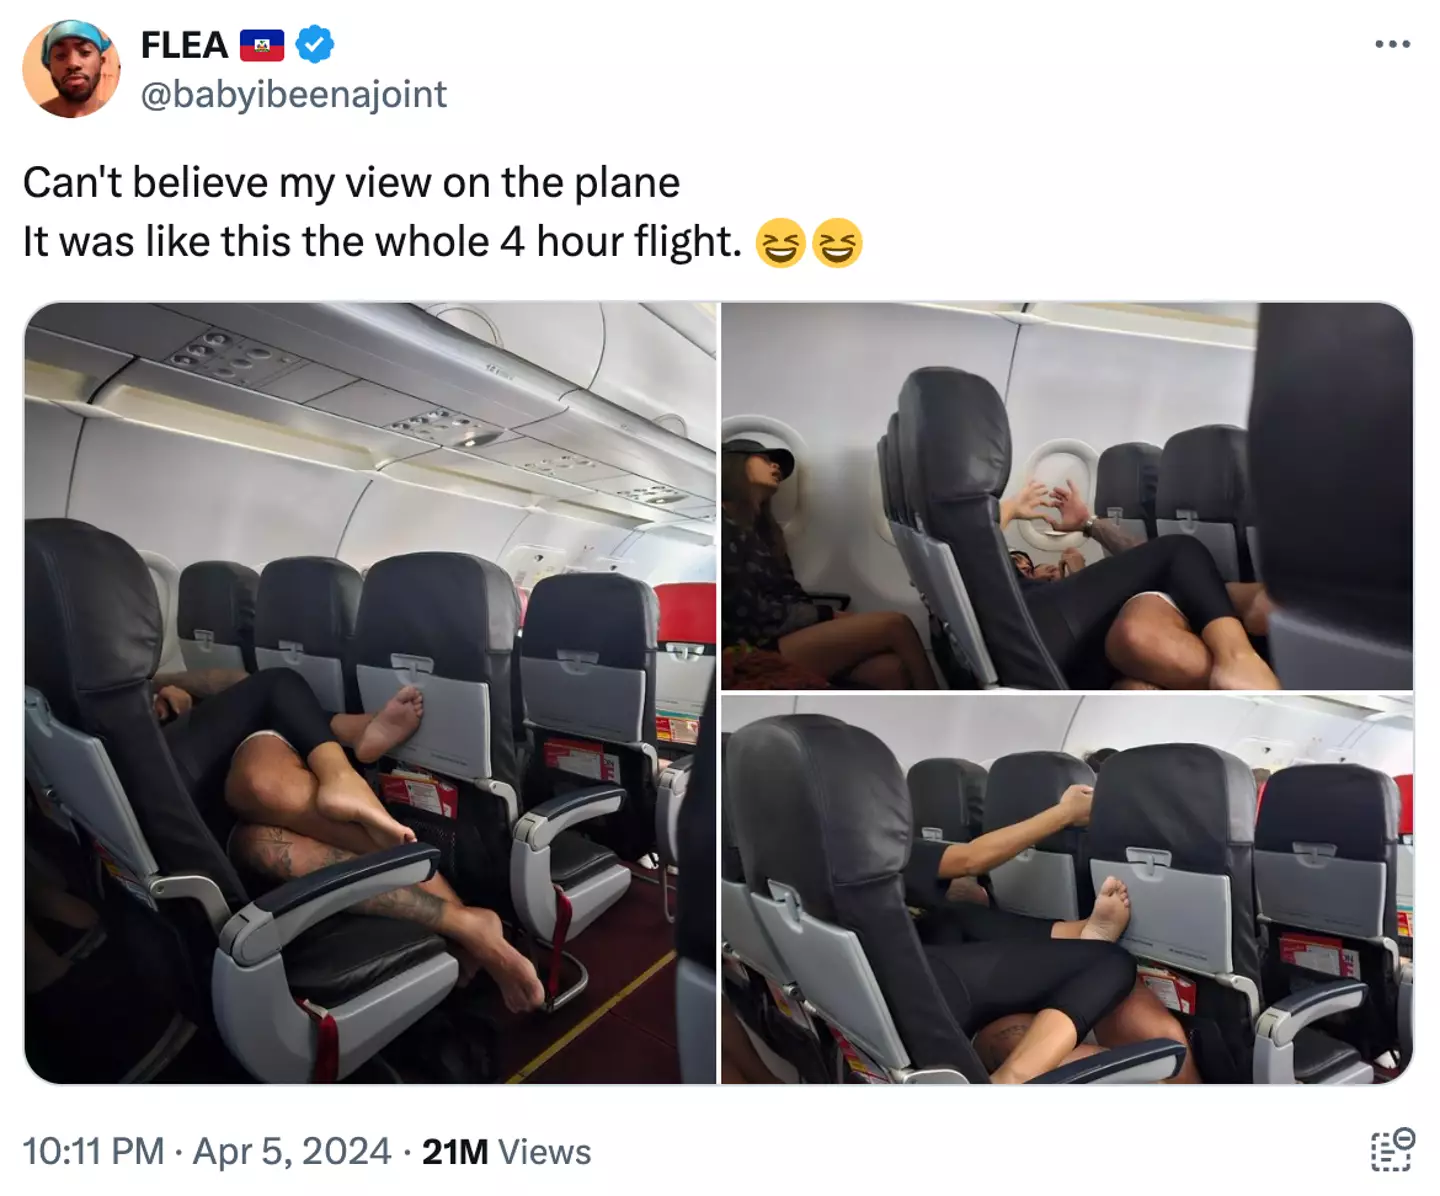 Passageiro de avião fica atordoado após sentar ao lado de casal que estava 'muito próximo' durante o voo